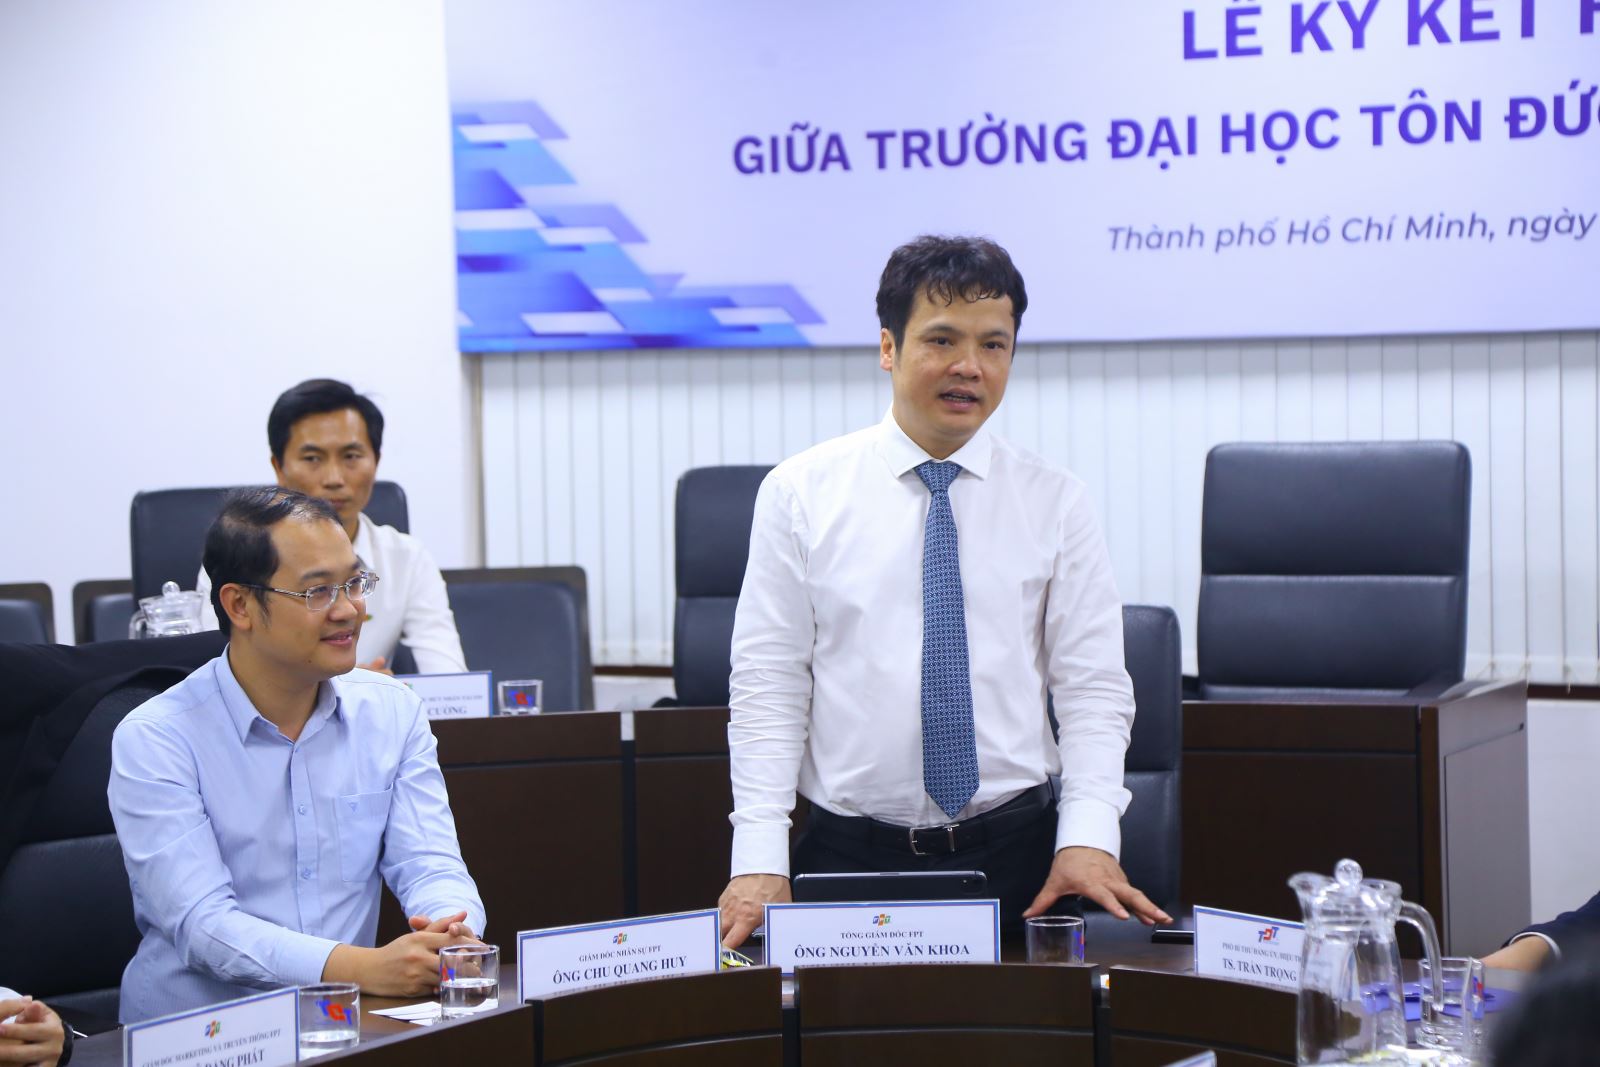 Ông Nguyễn Văn Khoa - Tổng giám đốc FPT chia sẻ tại sự kiện.